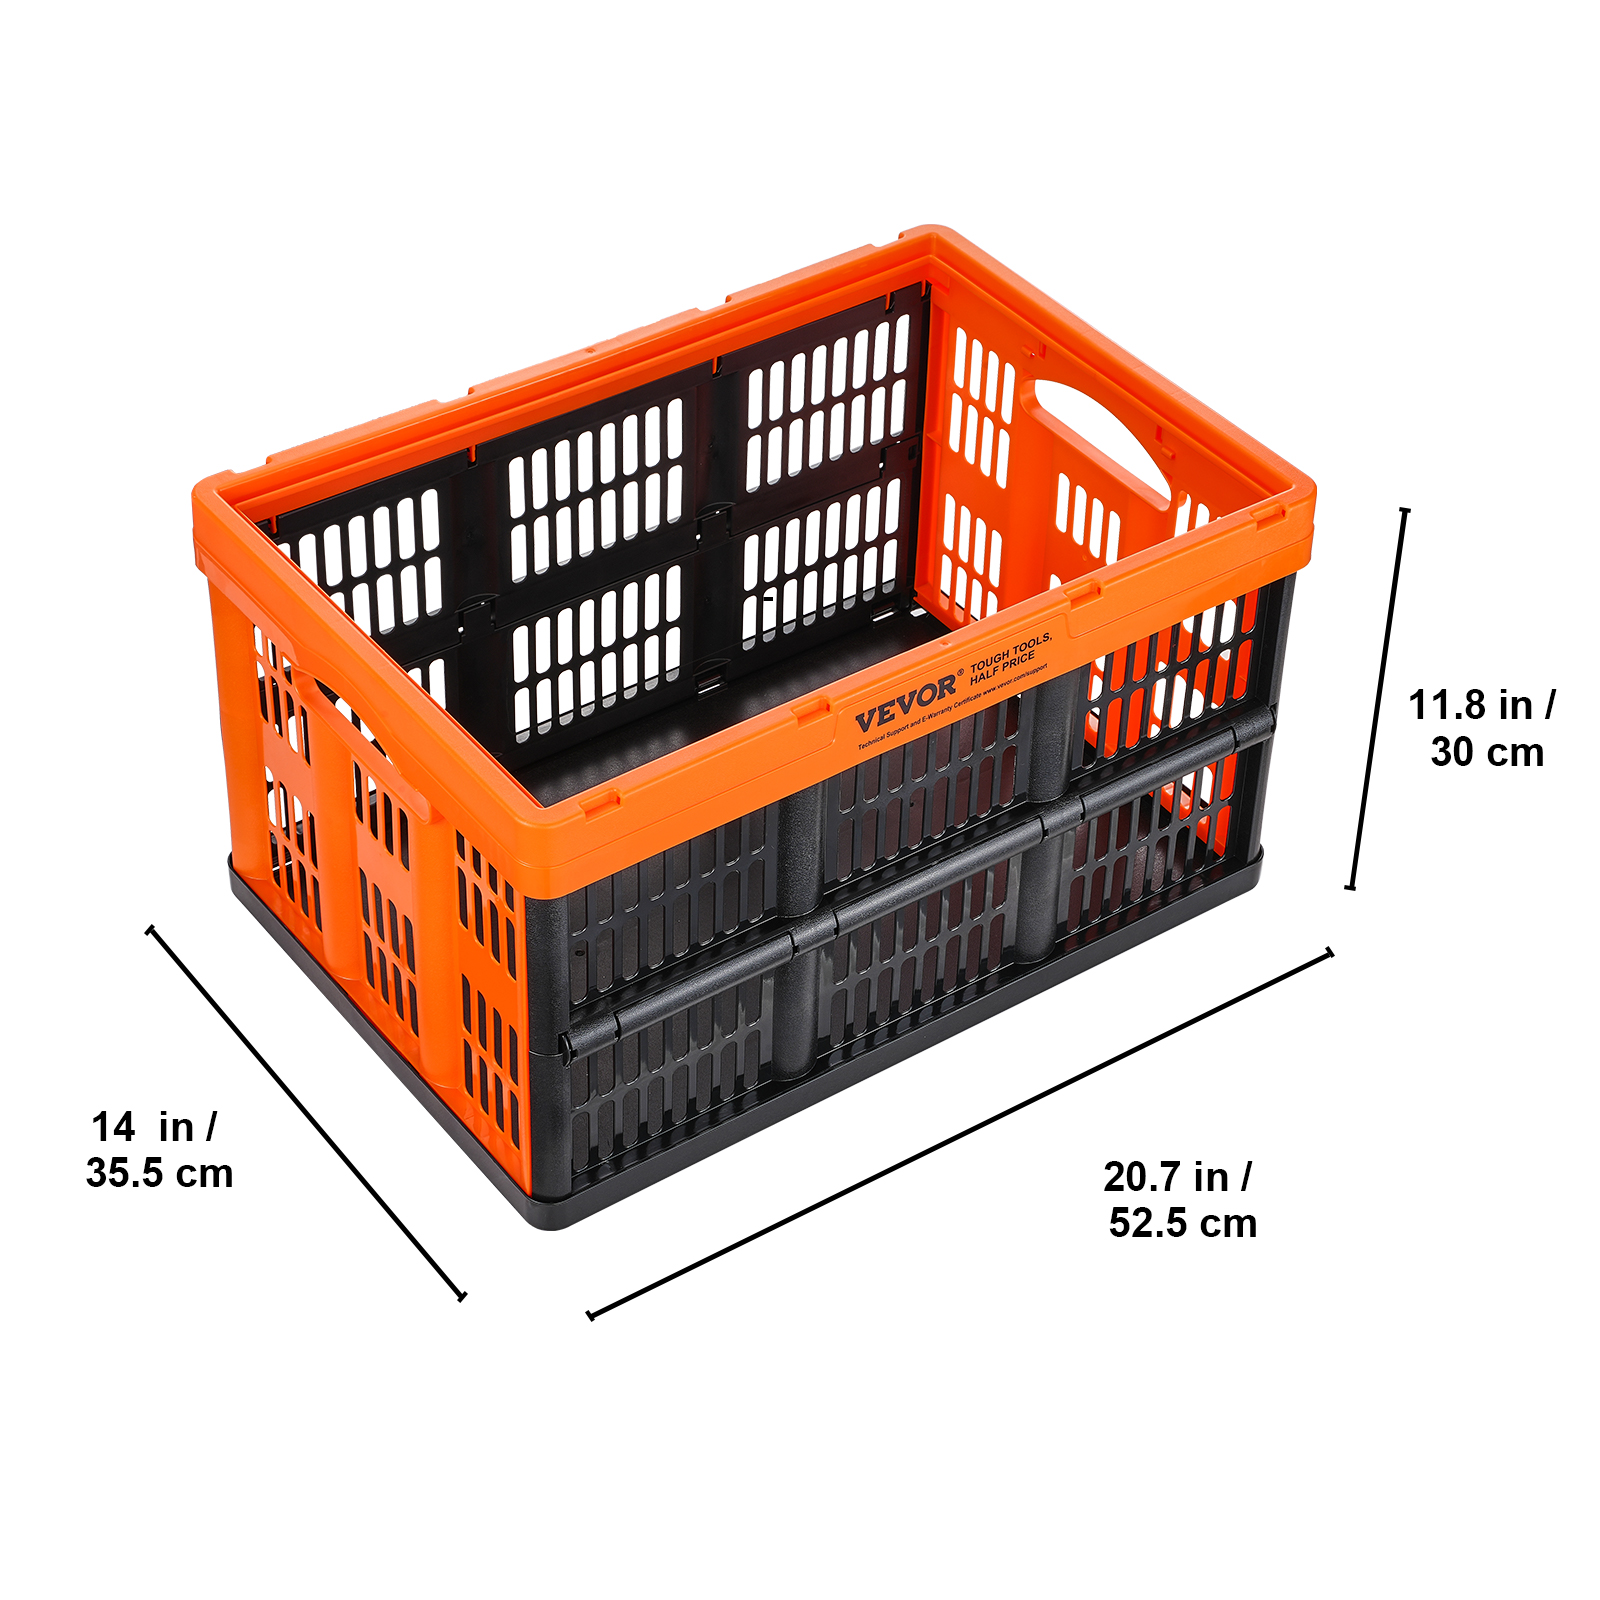 VEVOR 3er-Set 45L Profi Klappbox aus PP Transportbox Faltbarer  Aufbewahrungsbox mit Handgriff Stapelbare Kisten Storage Box Faltboxen  Stapelboxen für Aufbewahrung & Transport Orange